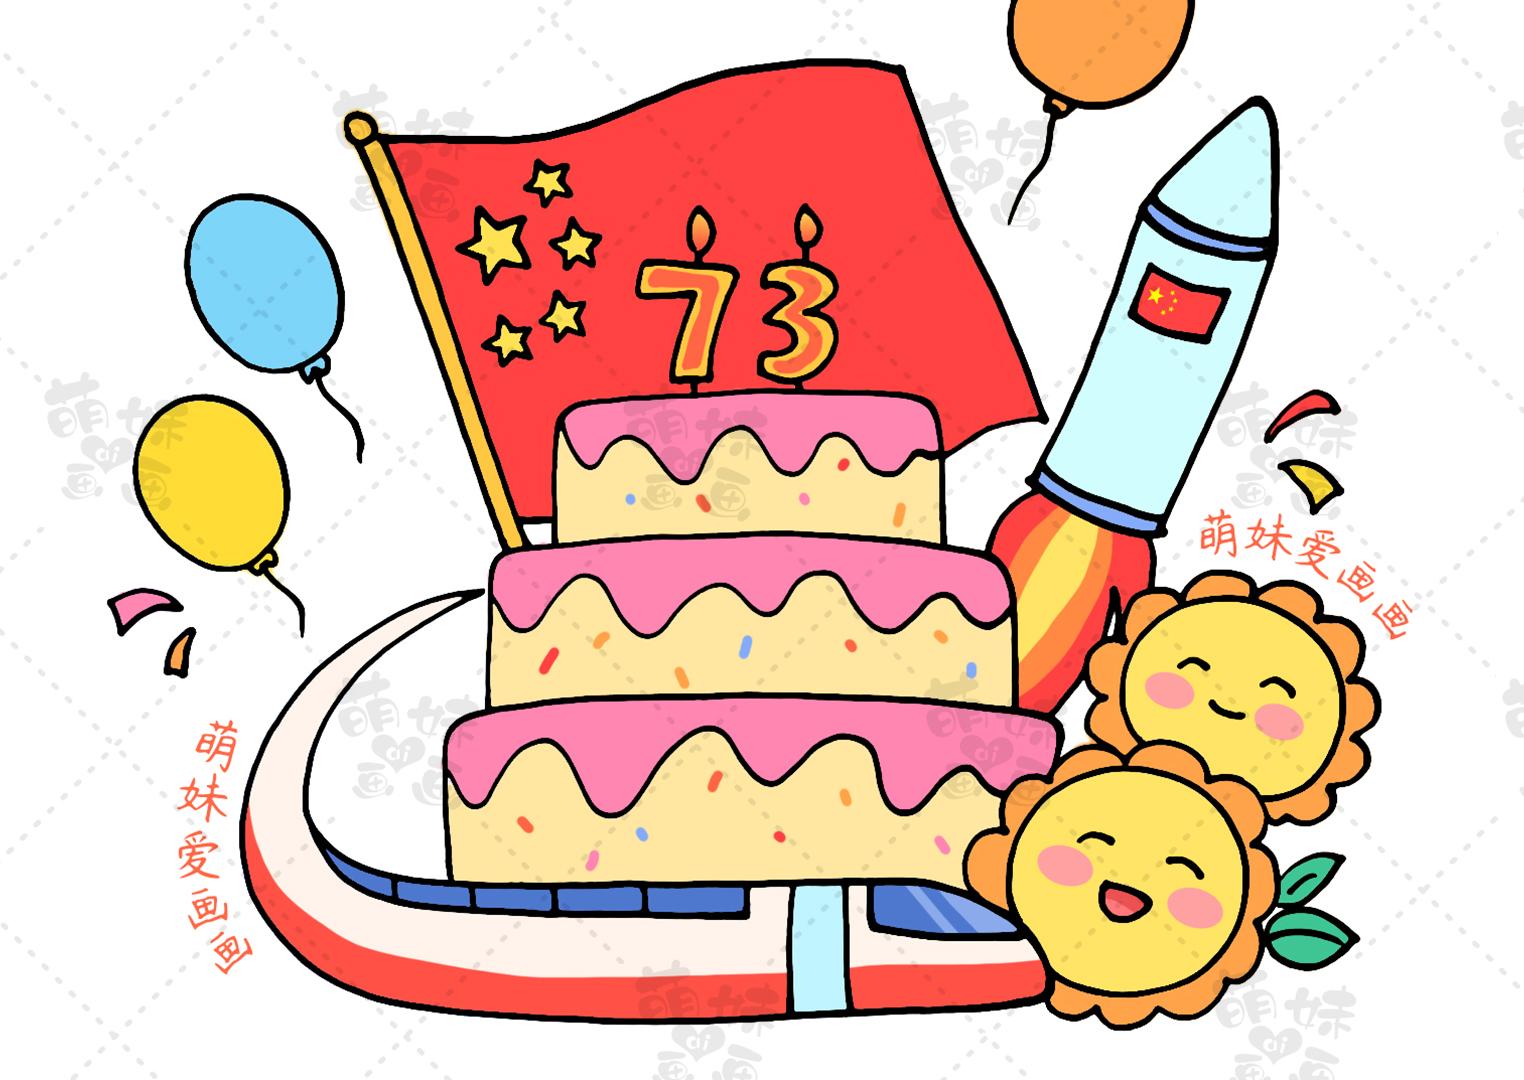 国庆节简笔画:花儿朵朵向太阳我们用蛋糕,红旗,彩虹作为手抄报的装饰